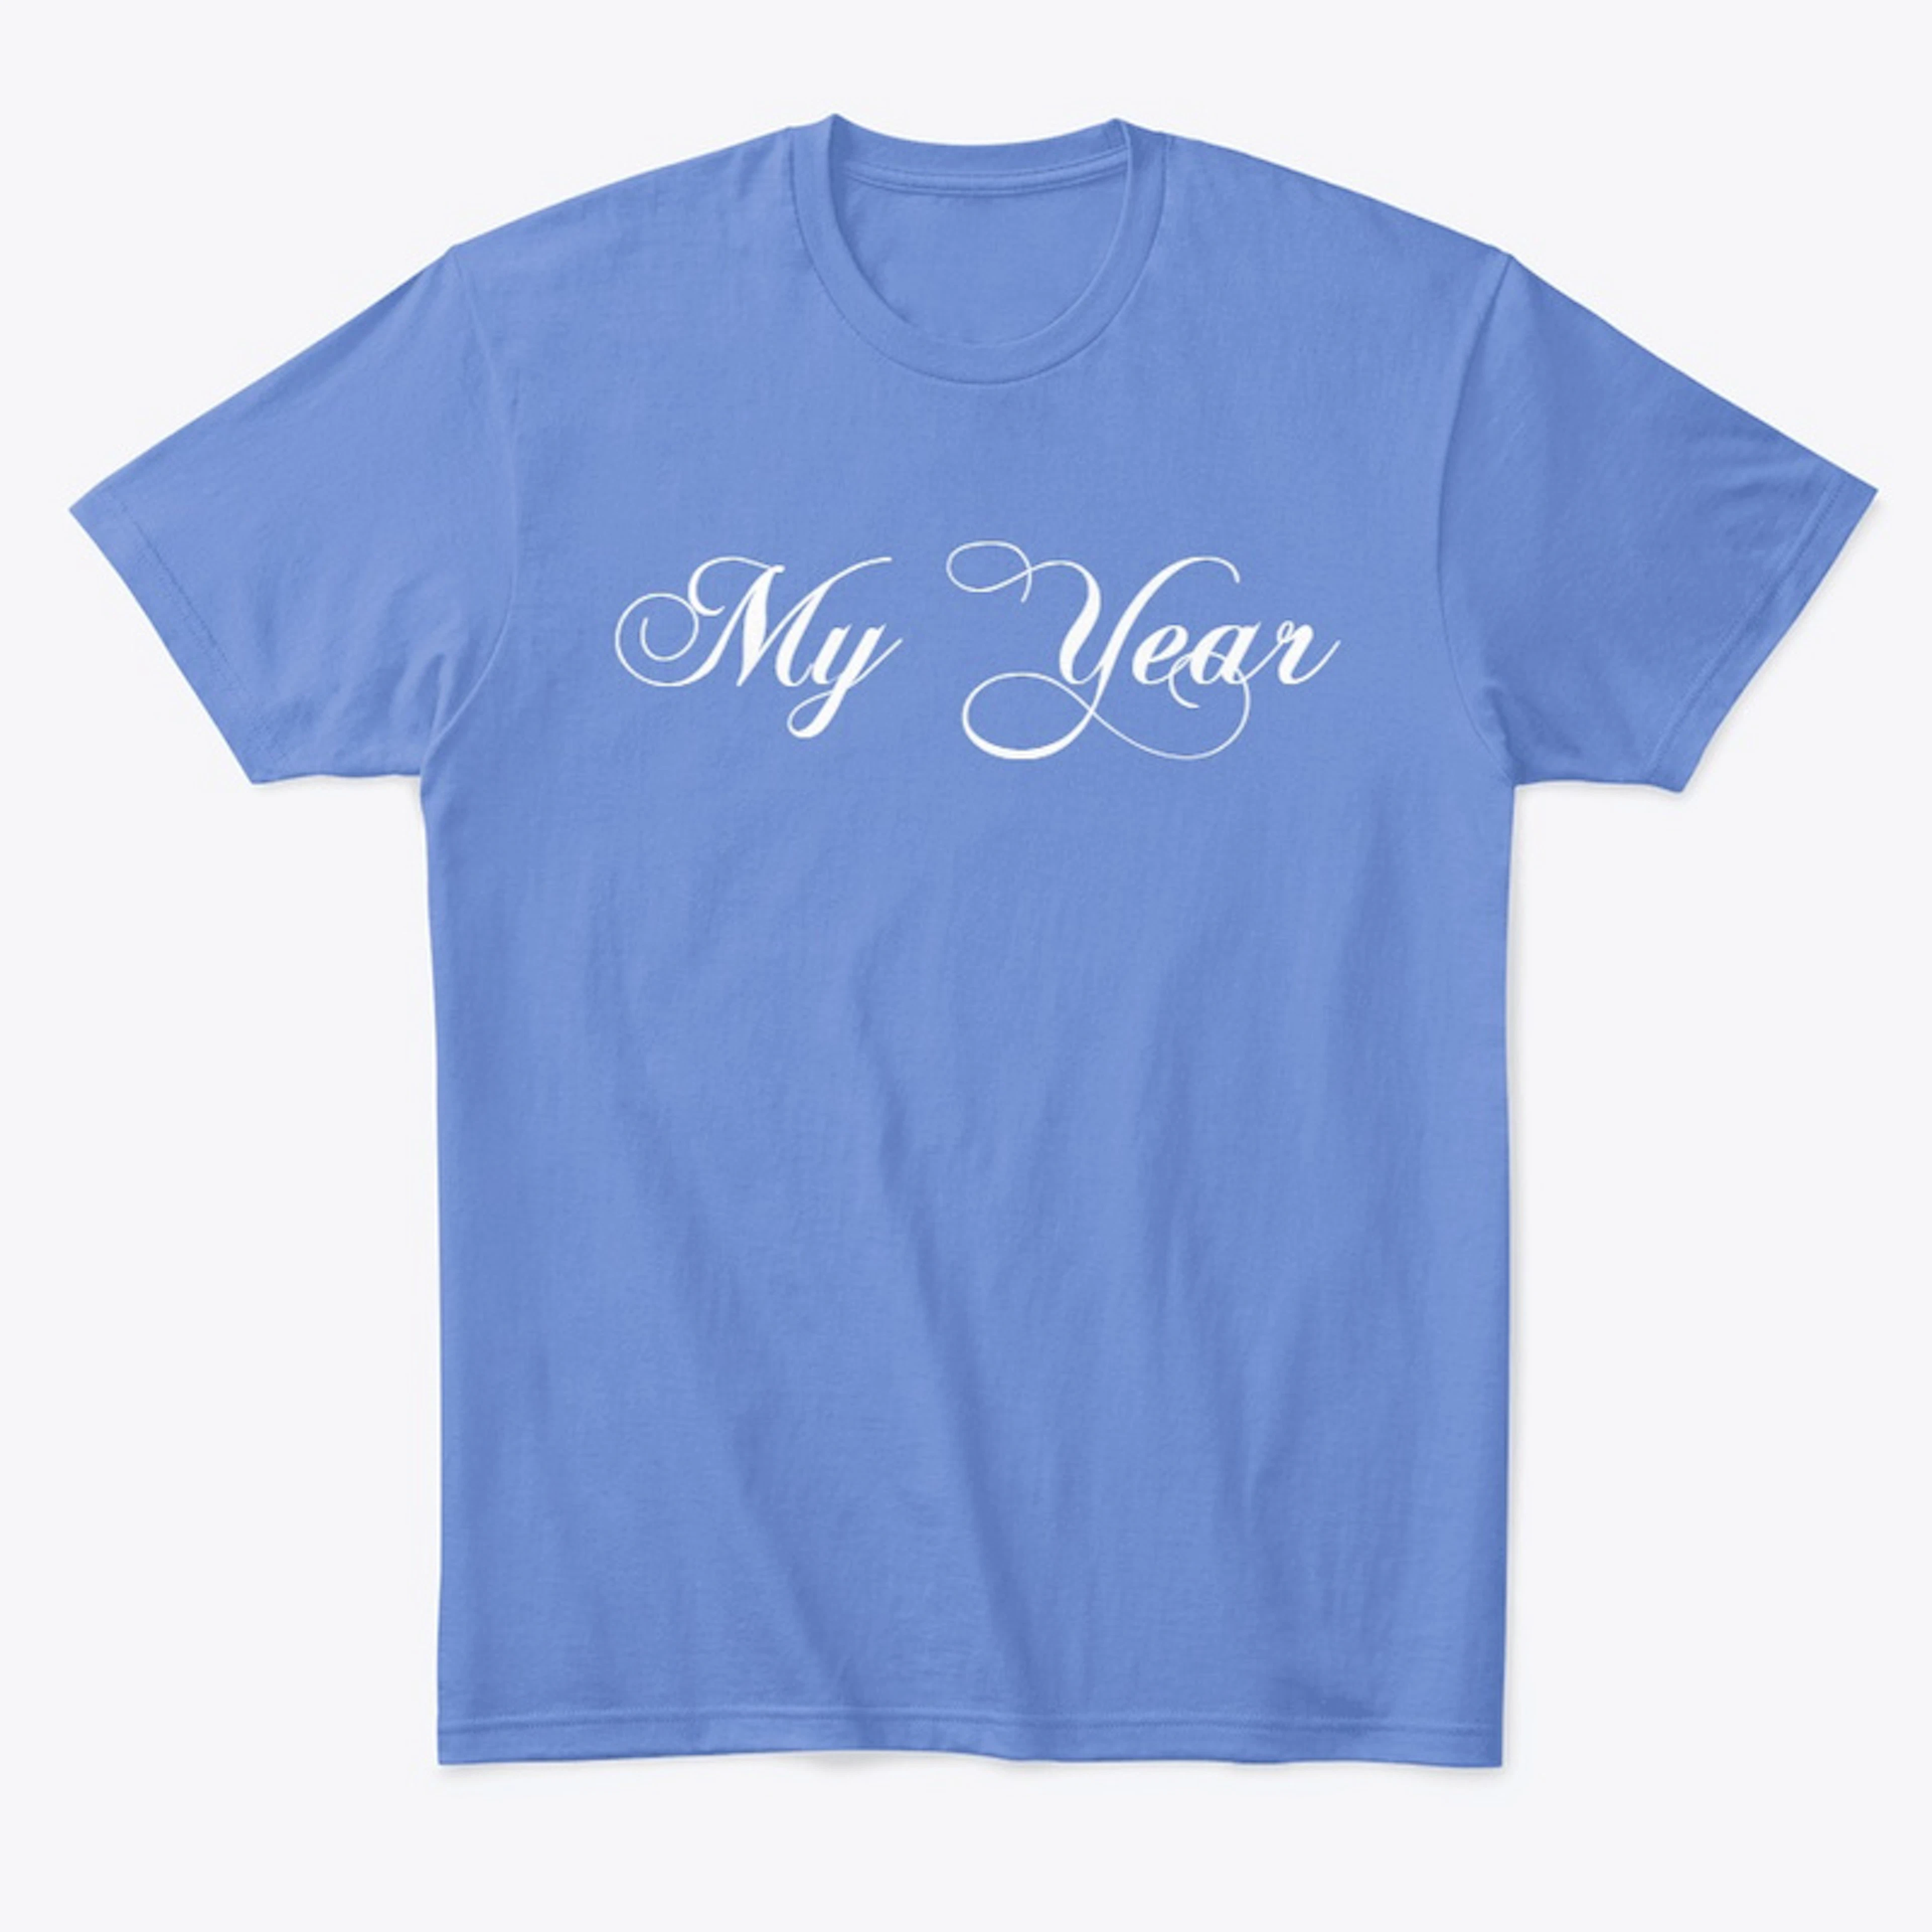 My Year (blue)